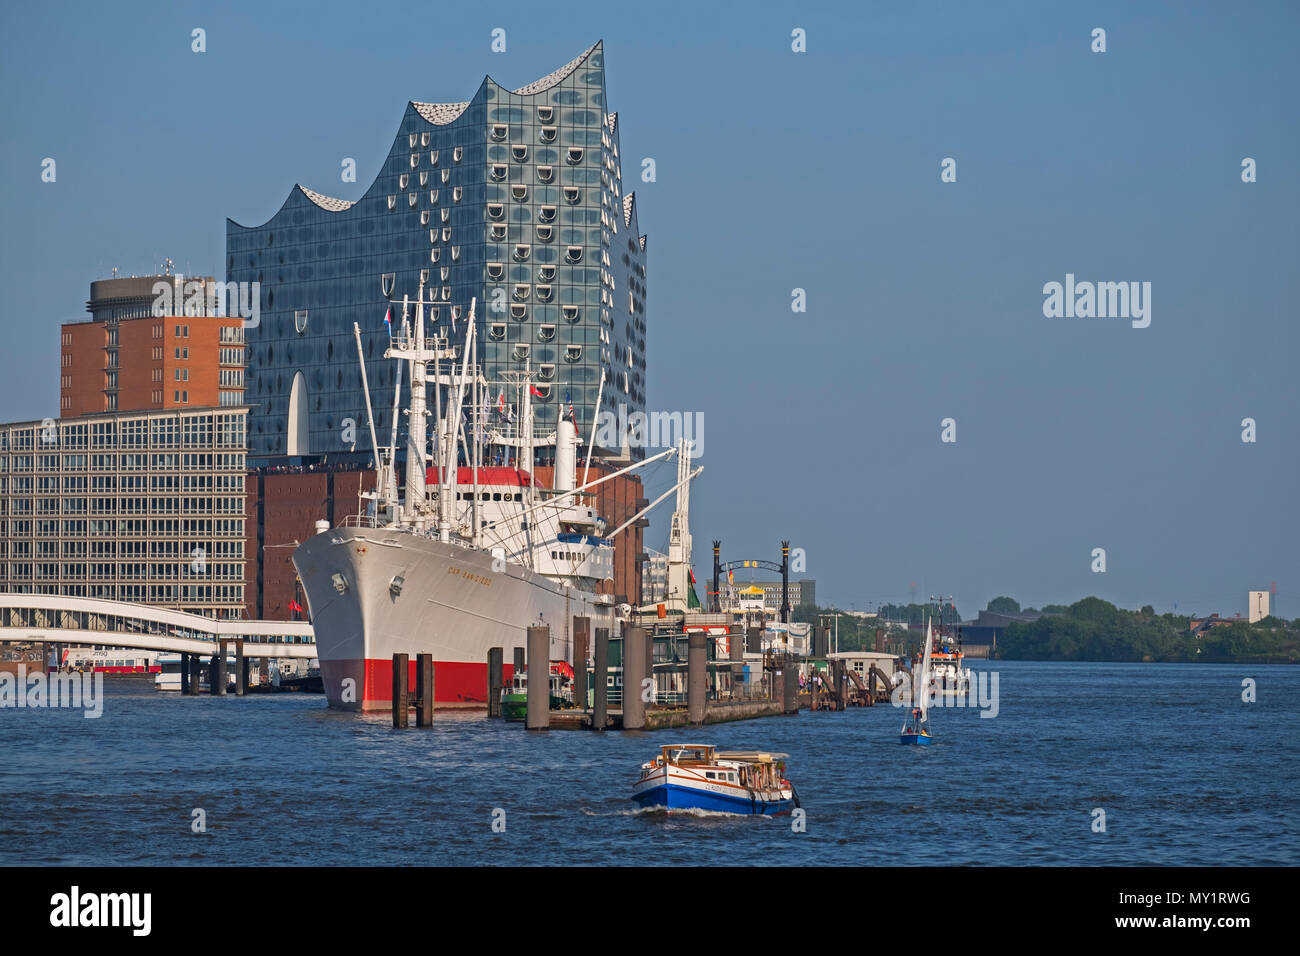 Elbphilharmonie Concert Hall y el Cap San Diego barco museo en Hamburgo, Alemania Foto de stock